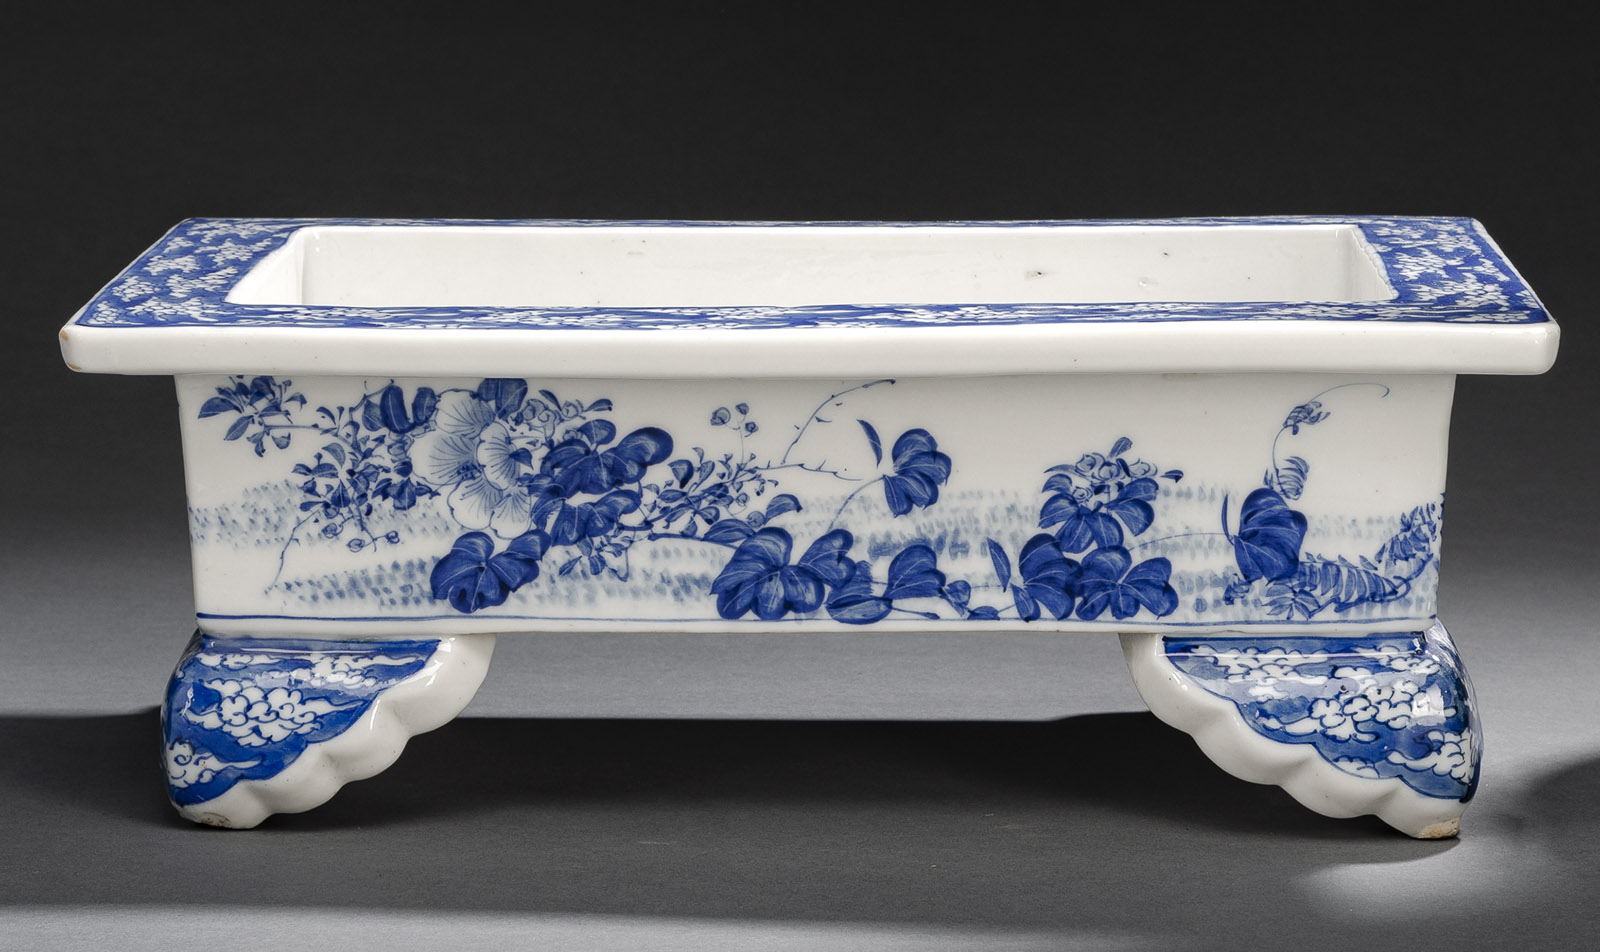 <b>Rechteckige, vierfüßige Pflanzschale aus Porzellan mit unterglasurblauem, floralen Dekor und Wolkenmotiven</b>